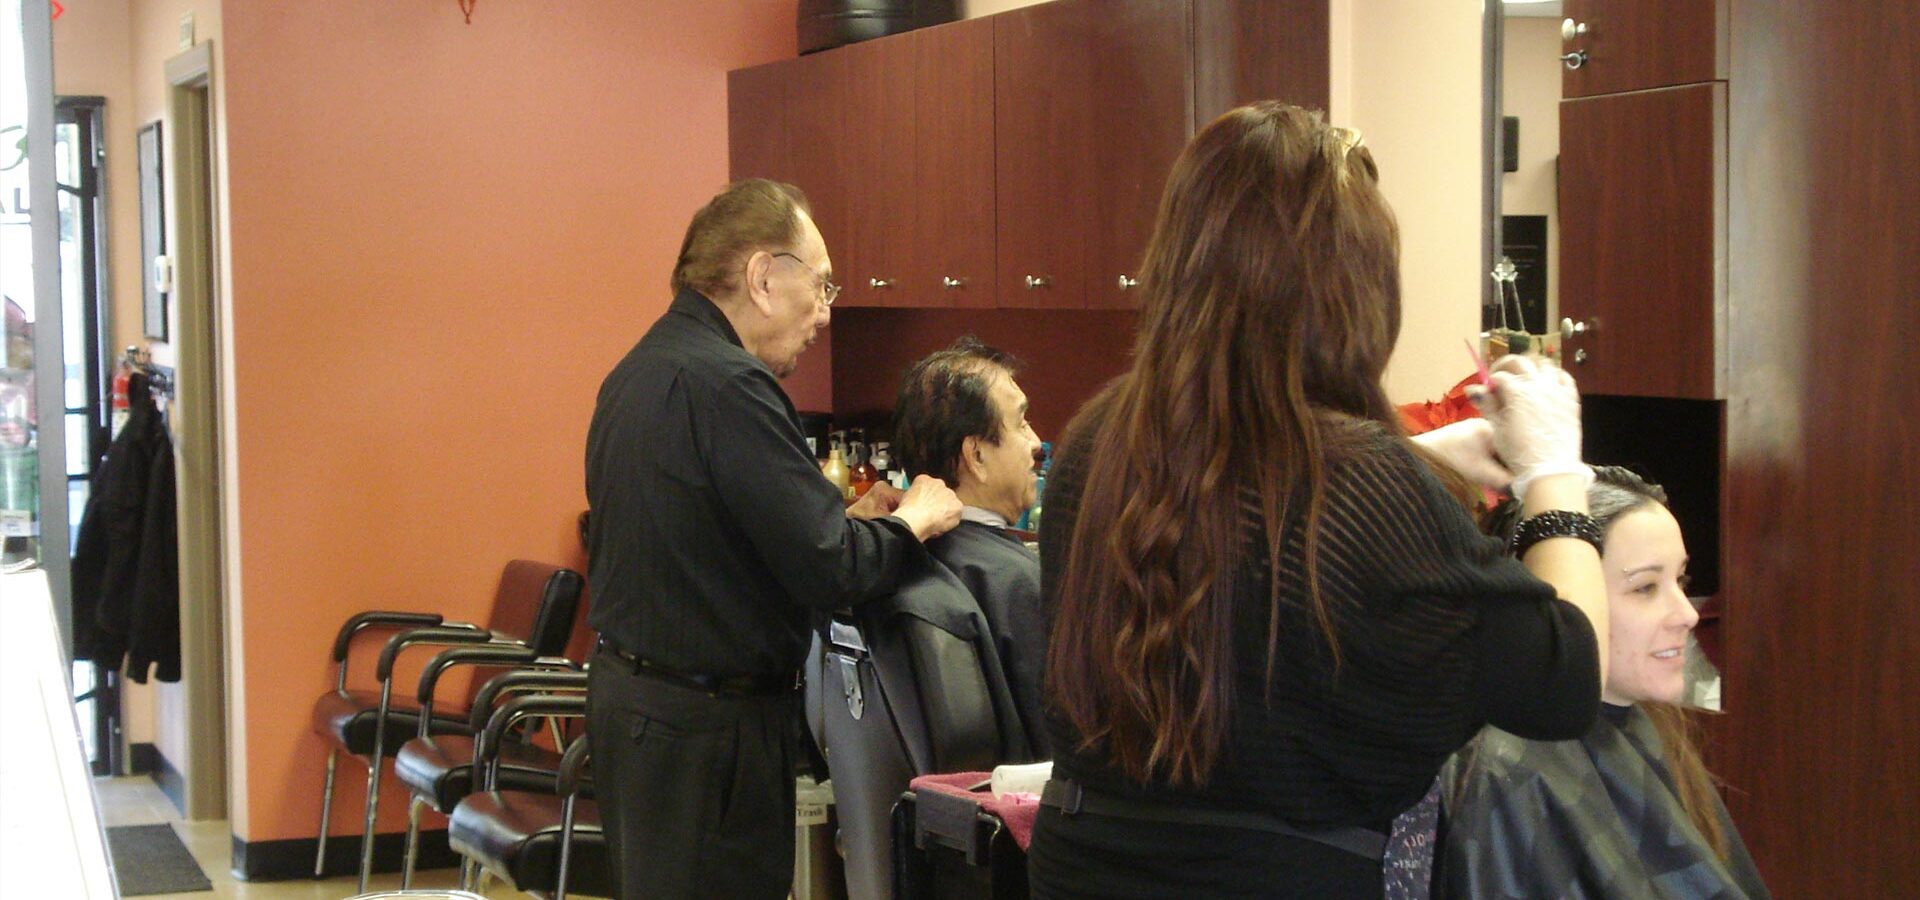 Shearology Hair Salon in San Diego